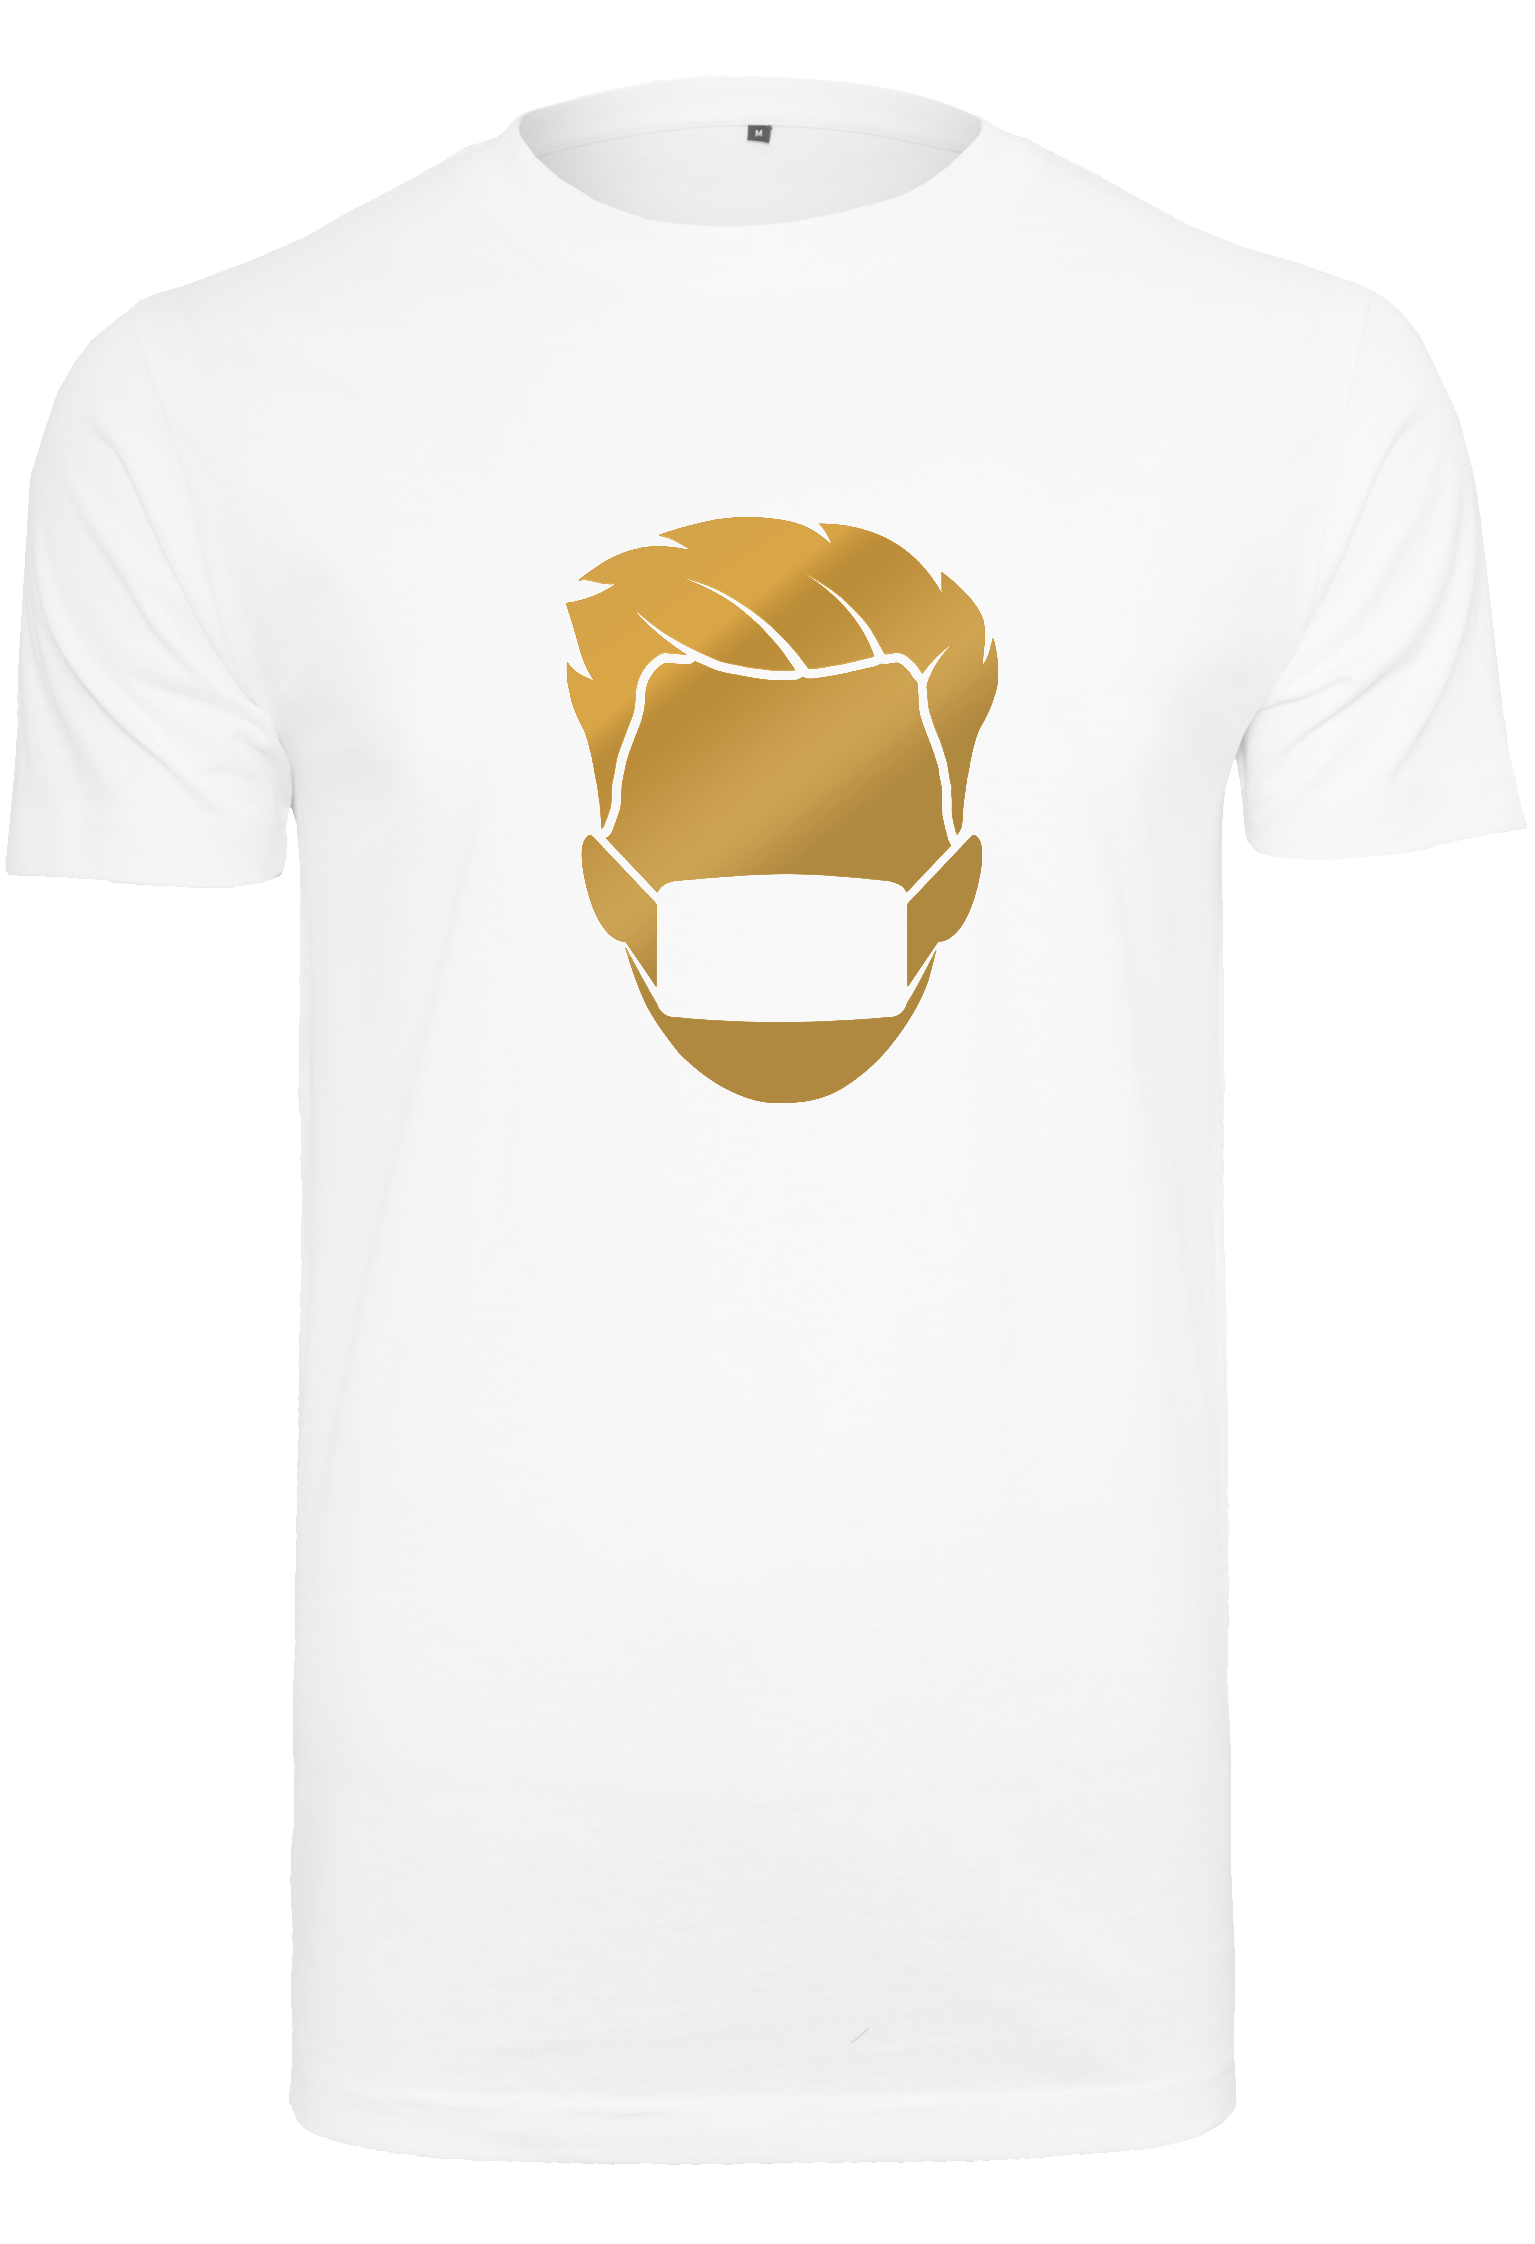 Goldjakli white T-Shirt